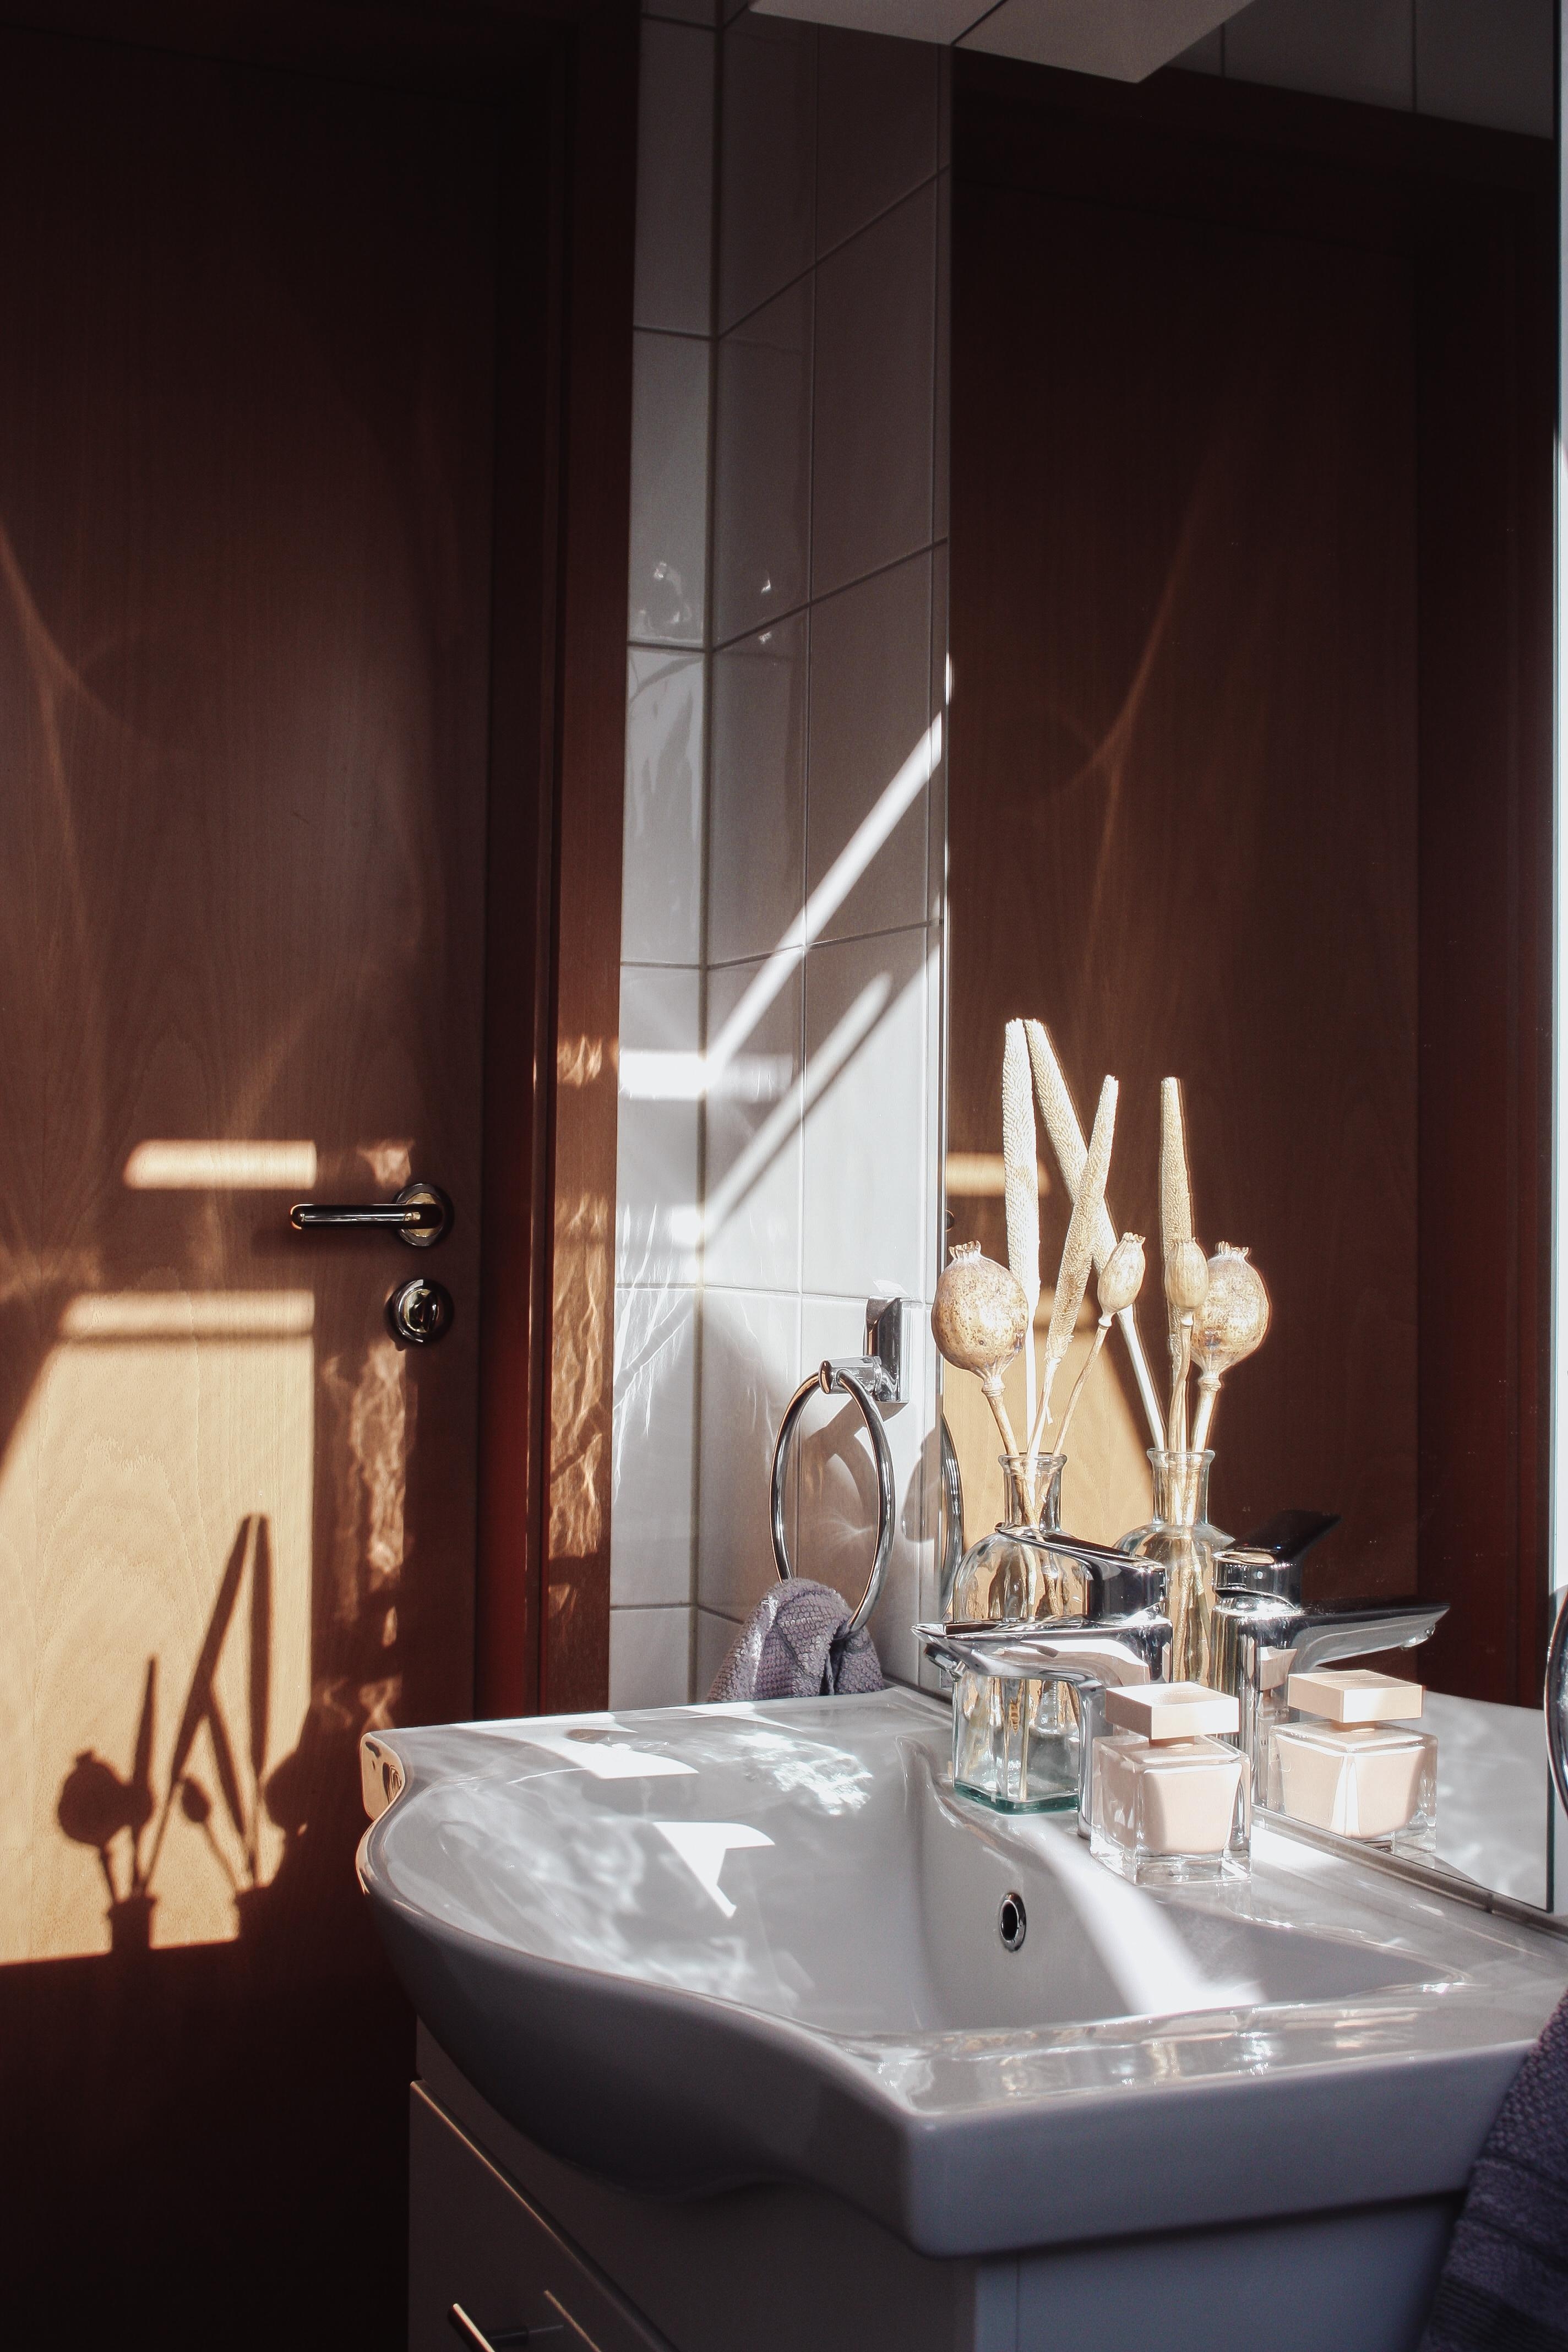 Morgensonne im Badezimmer. ☀️
#livingchallenge #badezimmer 